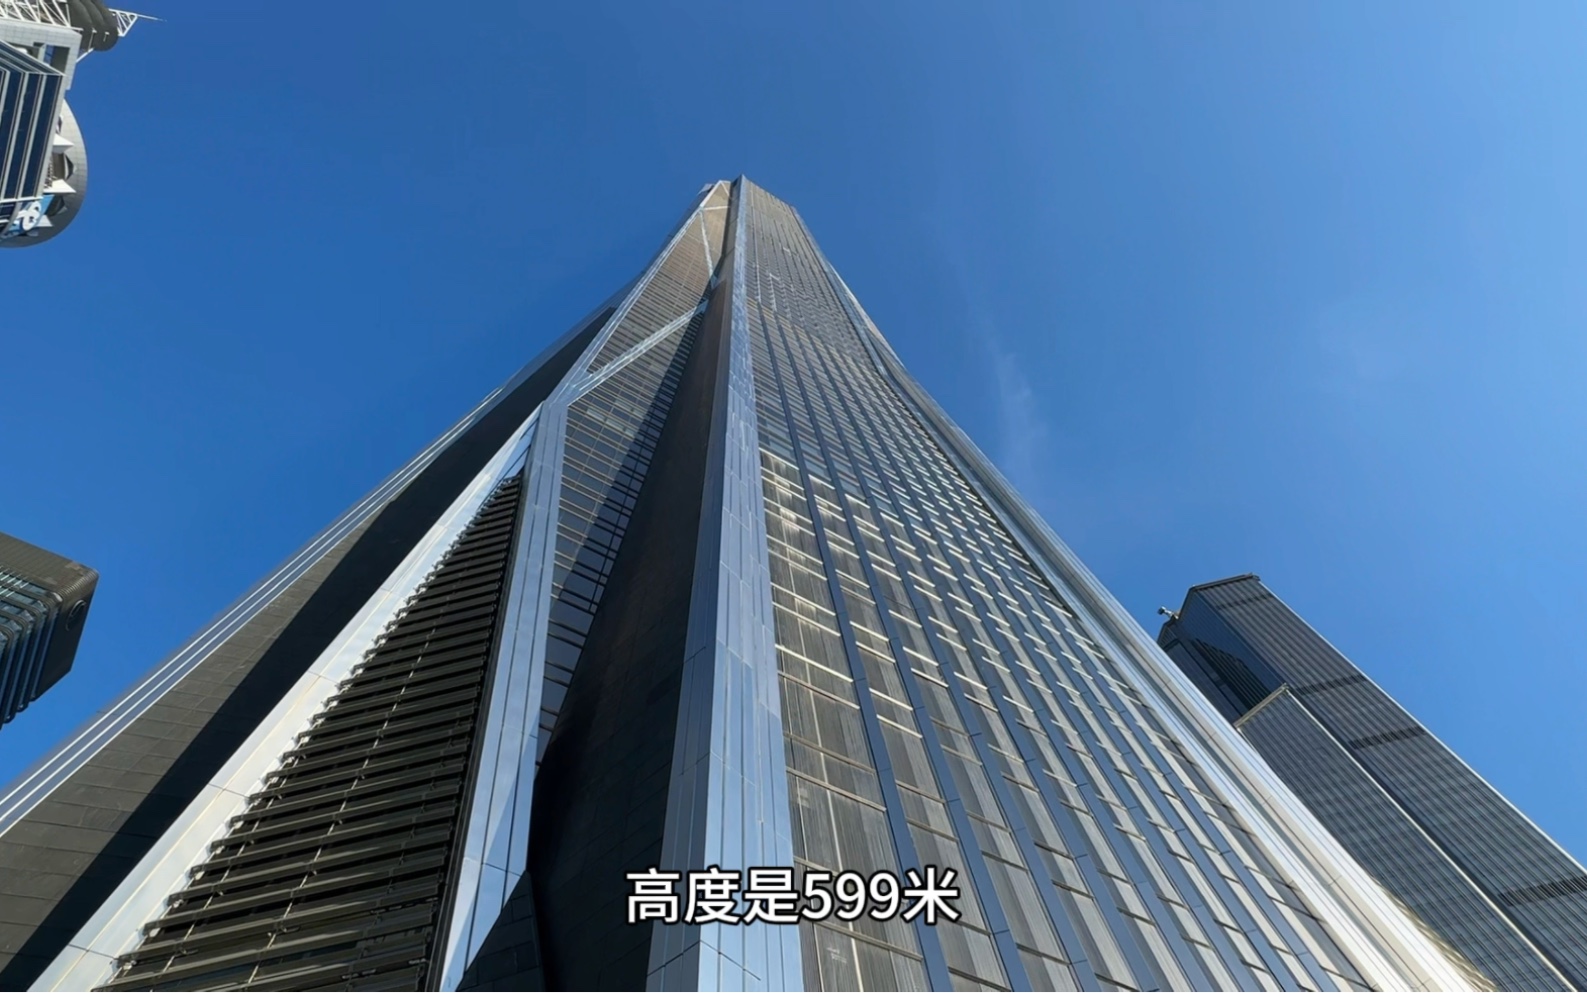 深圳第一高楼平安大厦,门票200块,上去看看是什么样?